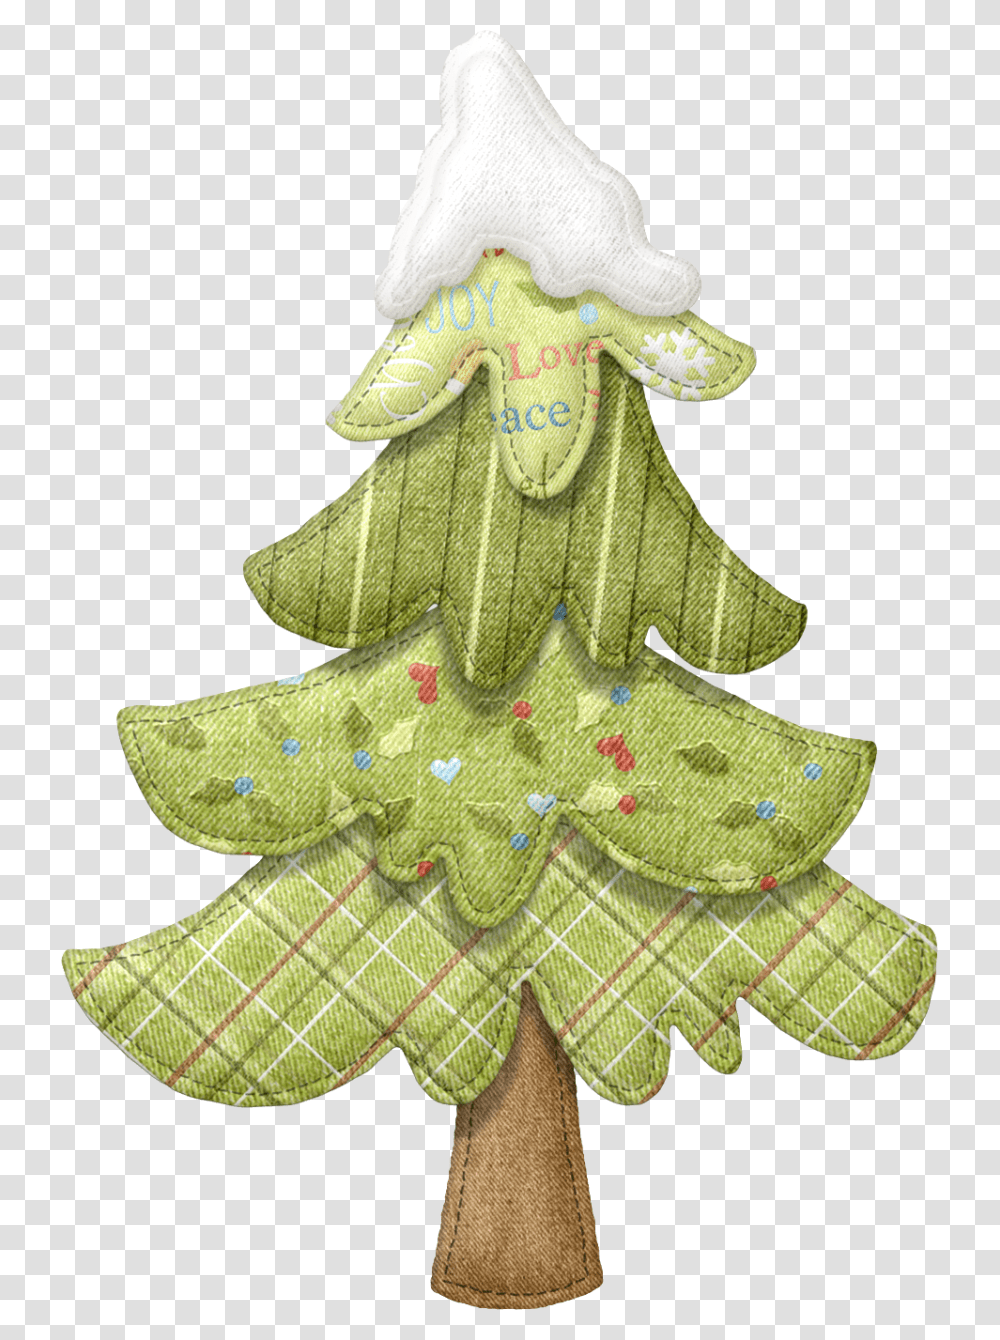 110fa8 7a7fc9cc Orig Navidad Papel De Navidad Costura Christmas Tree, Ornament, Plant, Star Symbol, Leaf Transparent Png